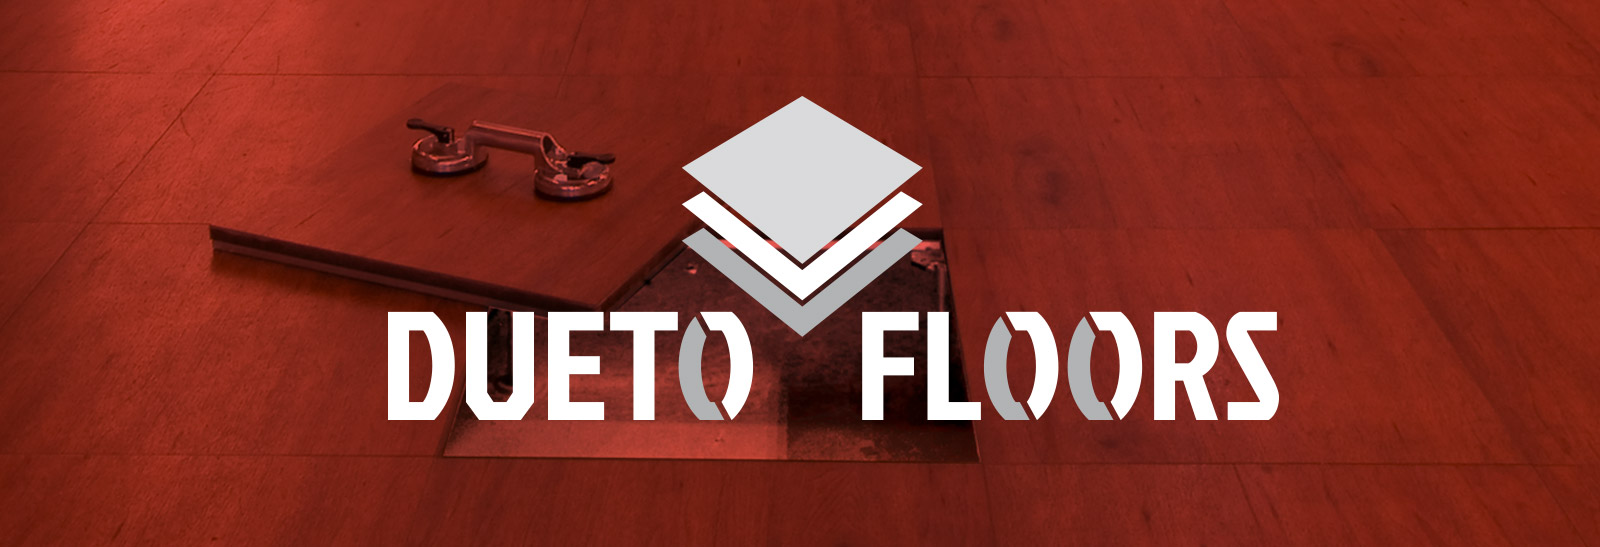 Dueto Floors